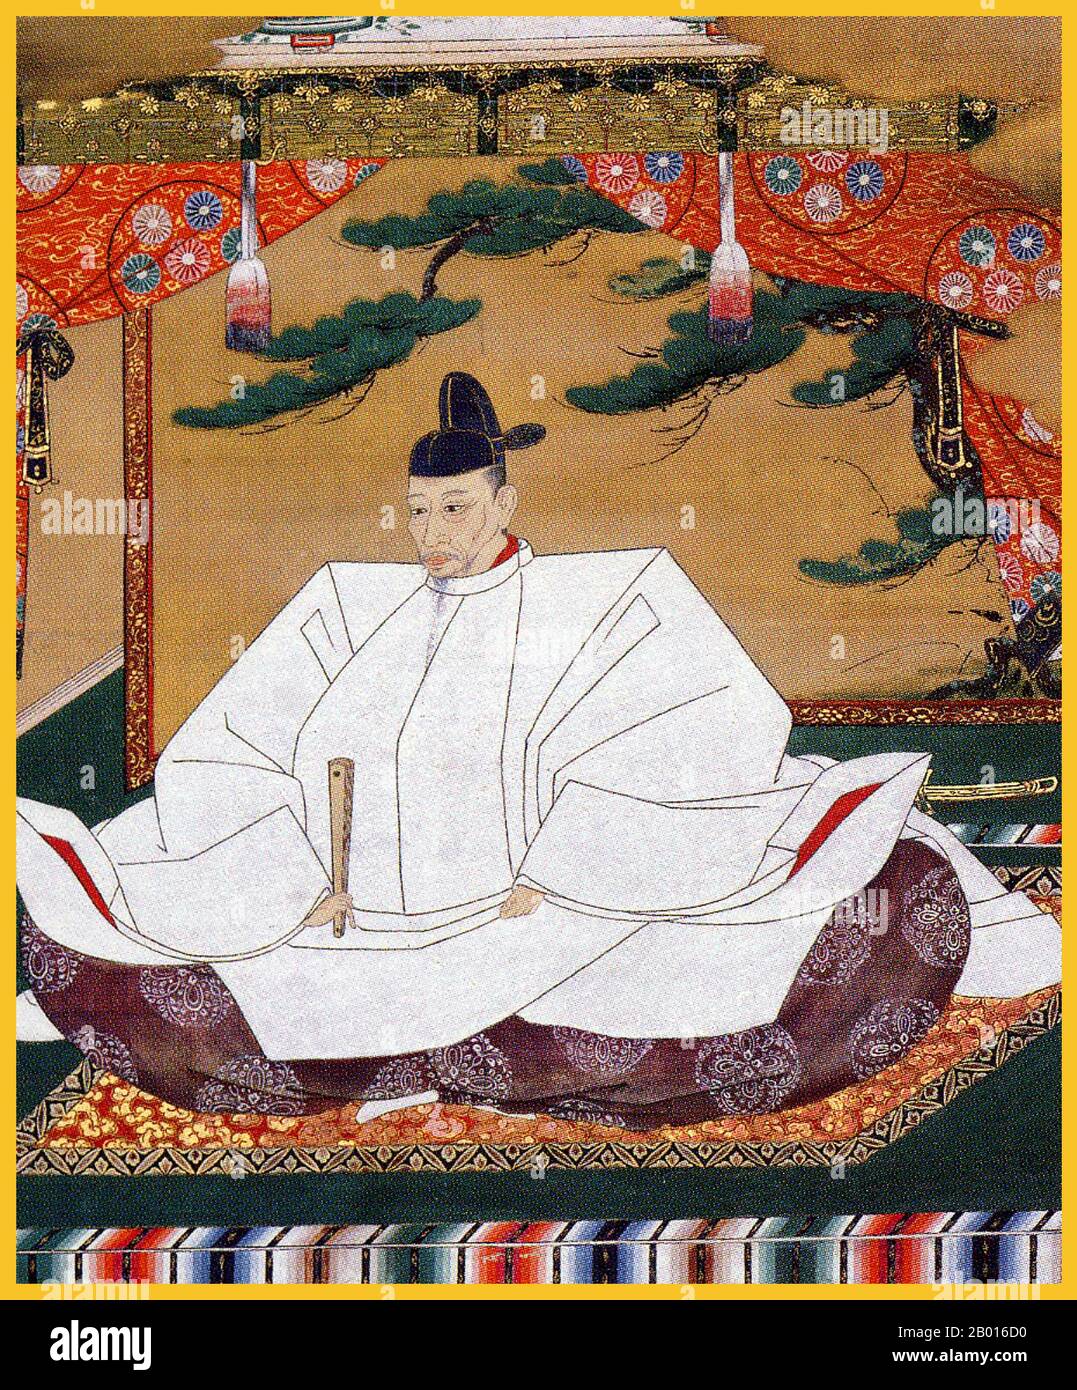 Japon: Toyotomi Hideyoshi (2 février 1536 - 18 septembre 1598), deuxième fédérateur du Japon.Peinture de défilement suspendue par Kano Mitsunobu (1565-1608), c.1601. Toyotomi Hideyoshi, né Kinoshita Tokichiro, était un daimyo dans la période Sengoku qui a unifié les factions politiques du Japon.Il succéda à son ancien seigneur de liège, Oda Nobunaga, et mit fin à la période Sengoku.La période de son règne est souvent appelée la période de Momoyama, nommée d'après le château de Hideyoshi.Il est reconnu pour un certain nombre d'héritages culturels, et est considéré comme le deuxième « Grand fédérateur » du Japon. Banque D'Images